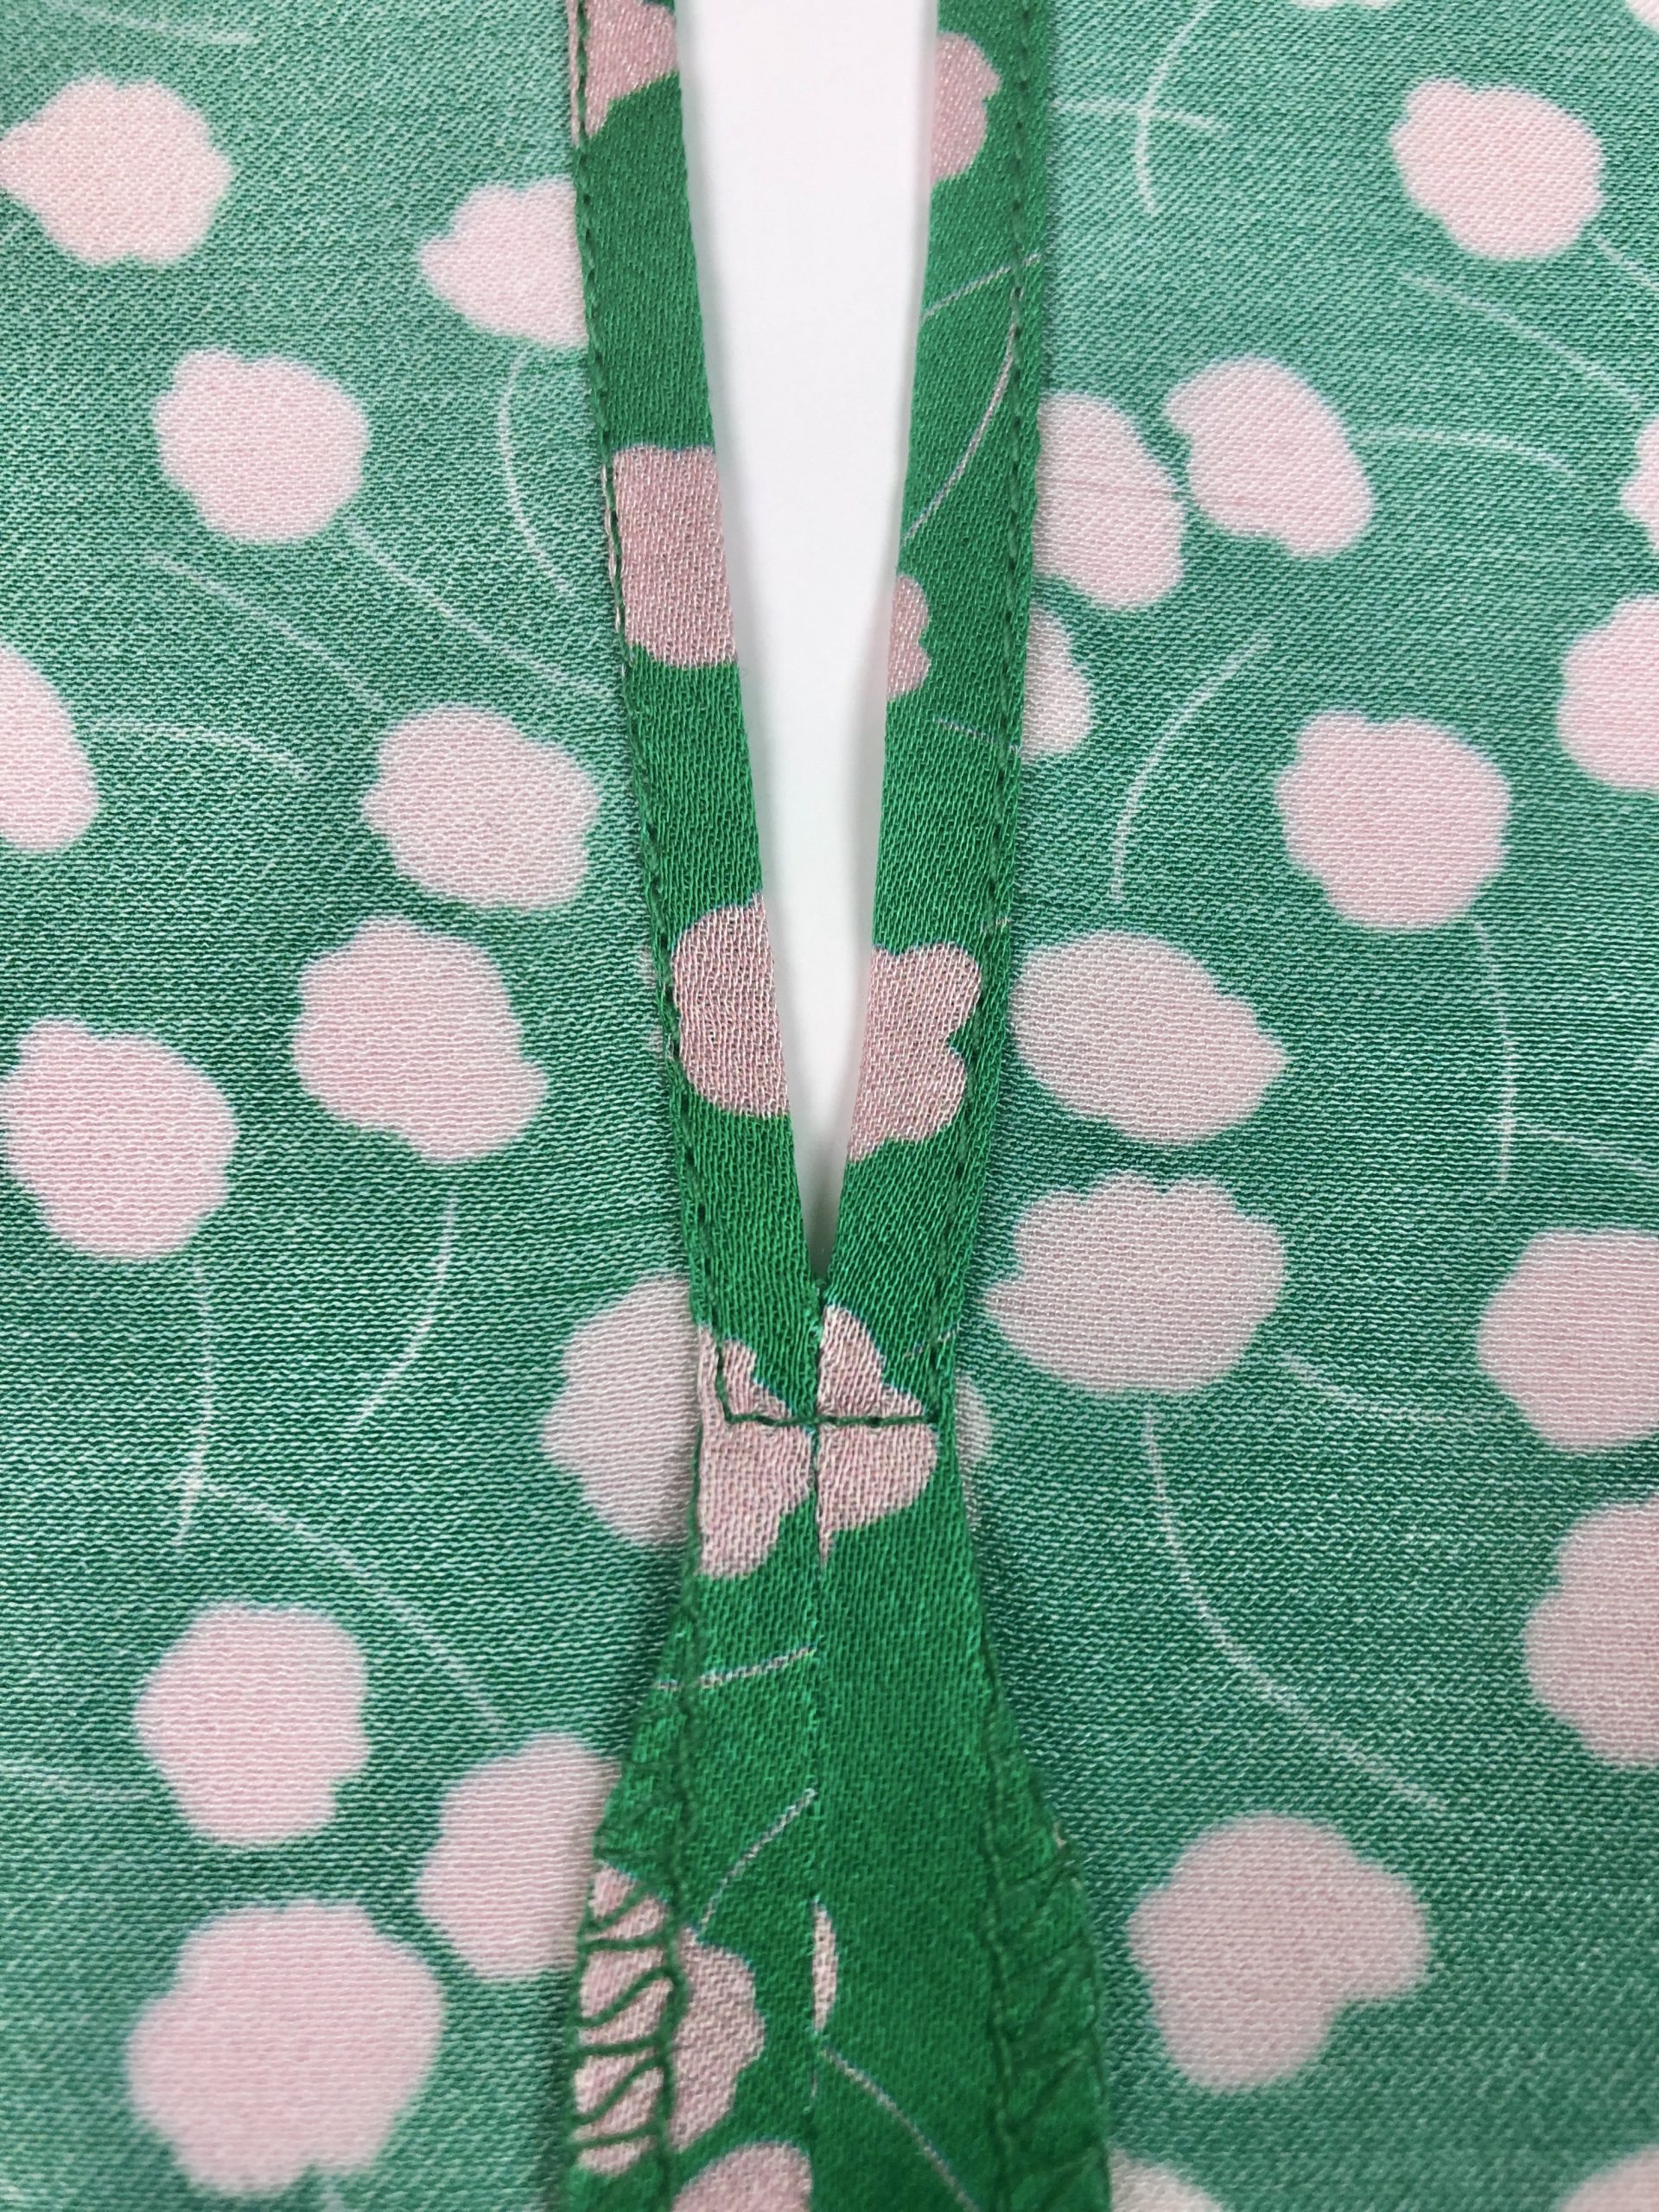 close up of stitching